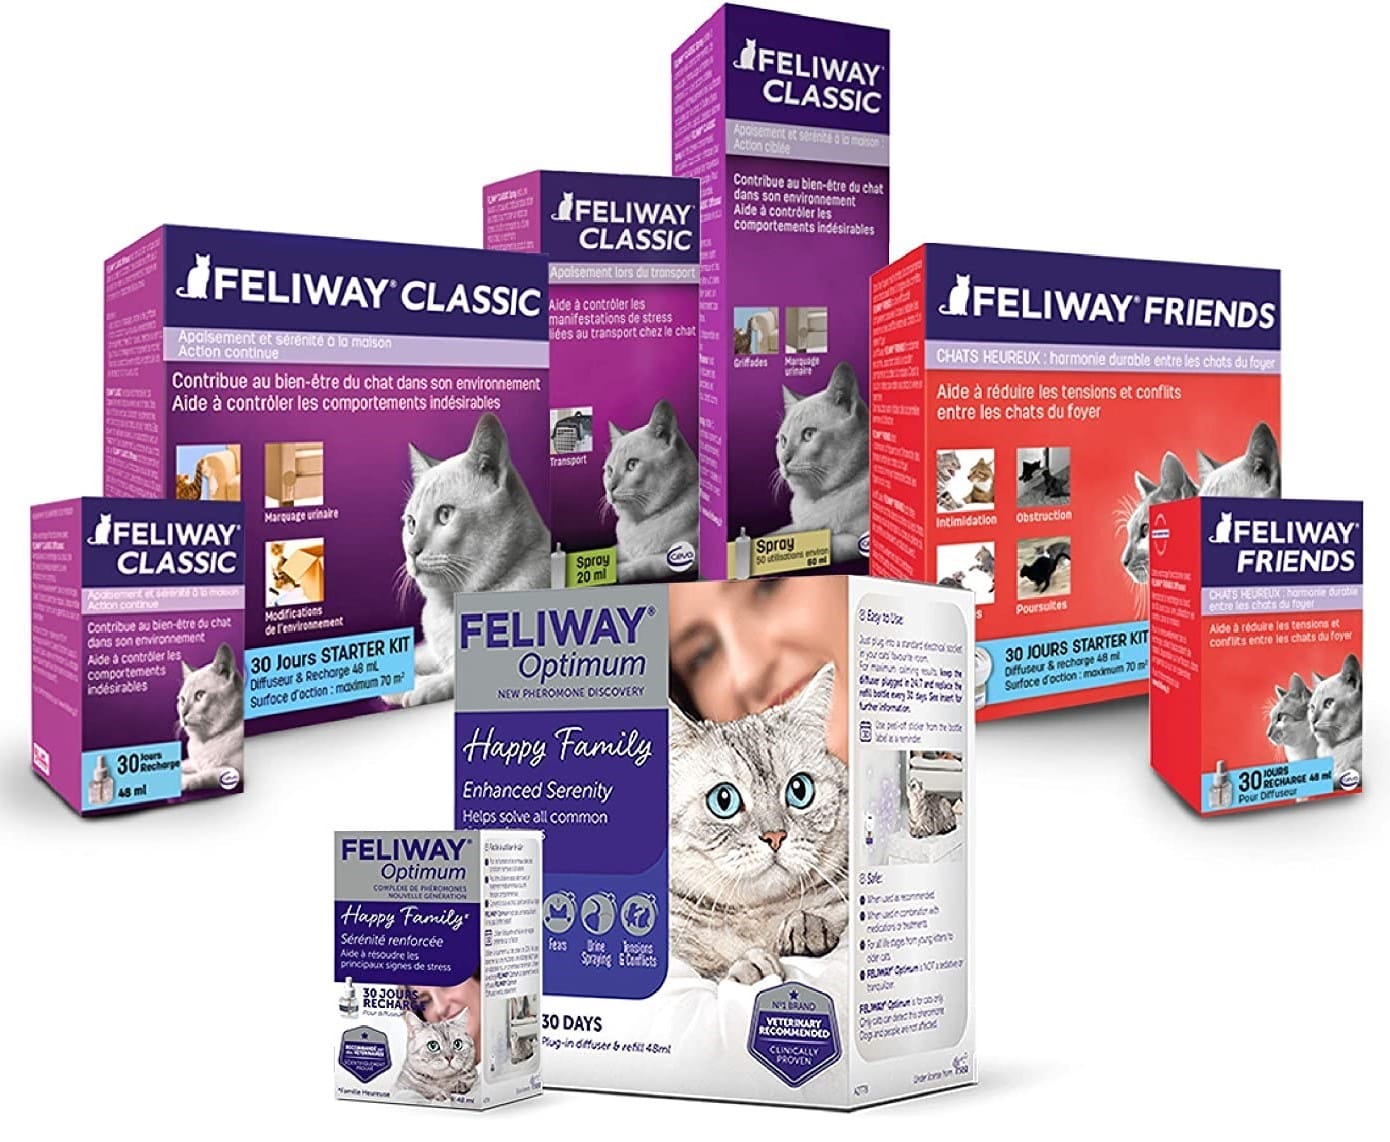 Feliway Optimum, nuevo tratamiento de feromonas - Blog de Zootecnia